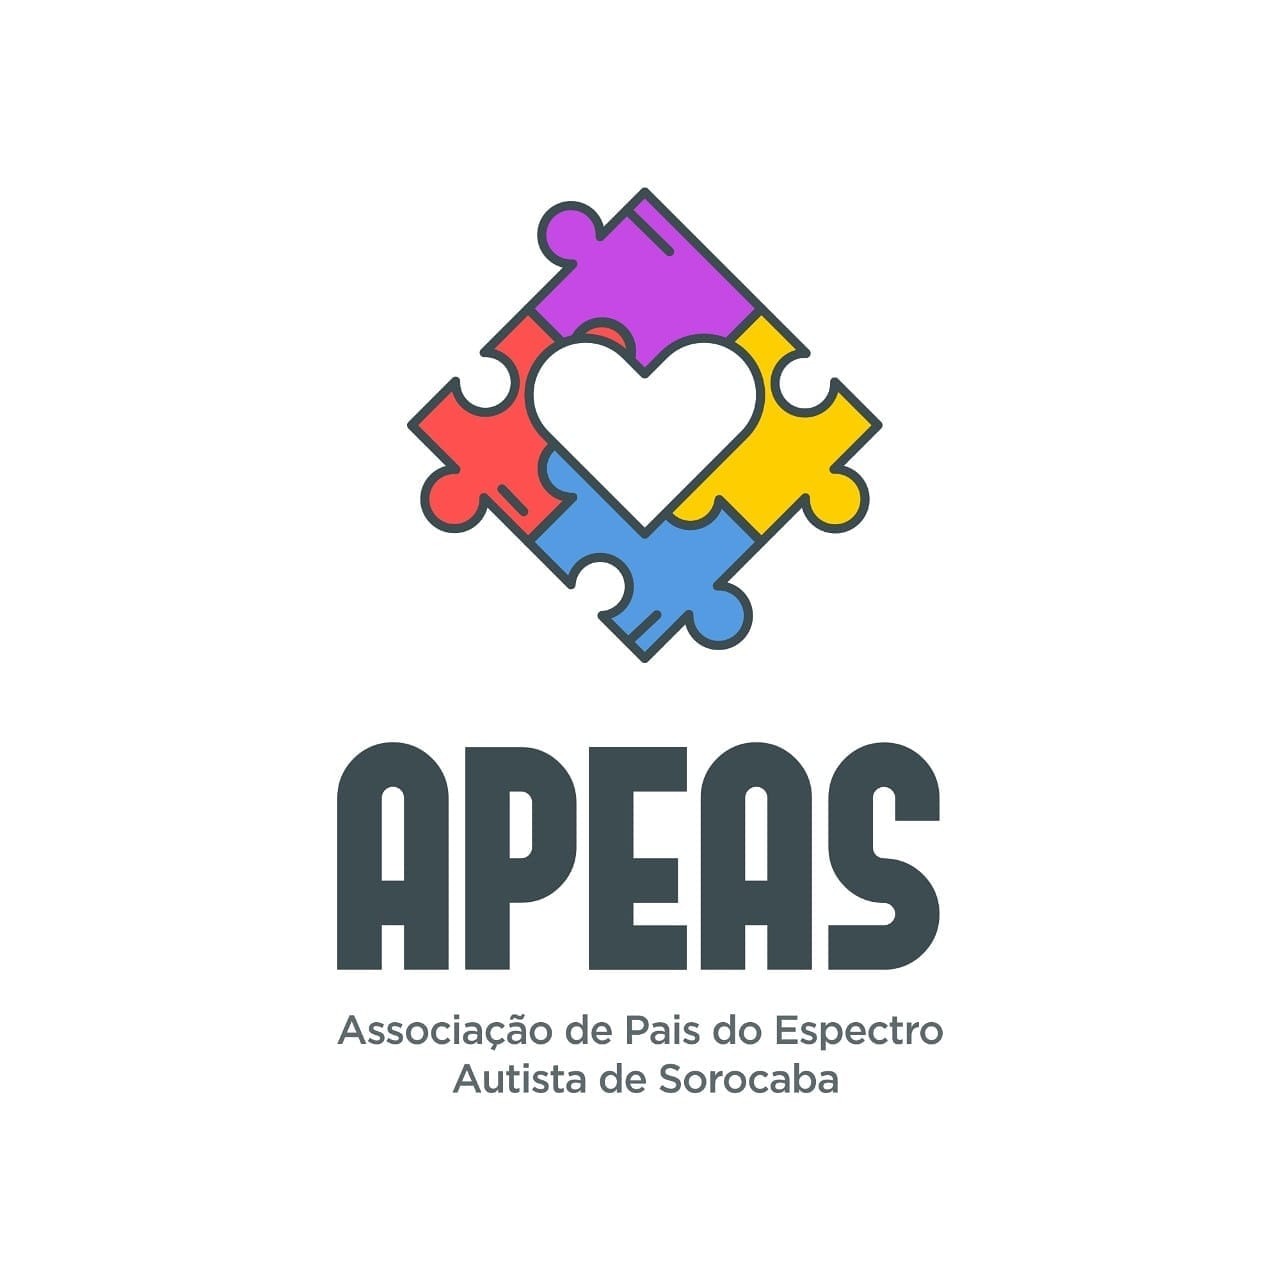 APEAS - Associação de Pais do espectro Autista de Sorocaba